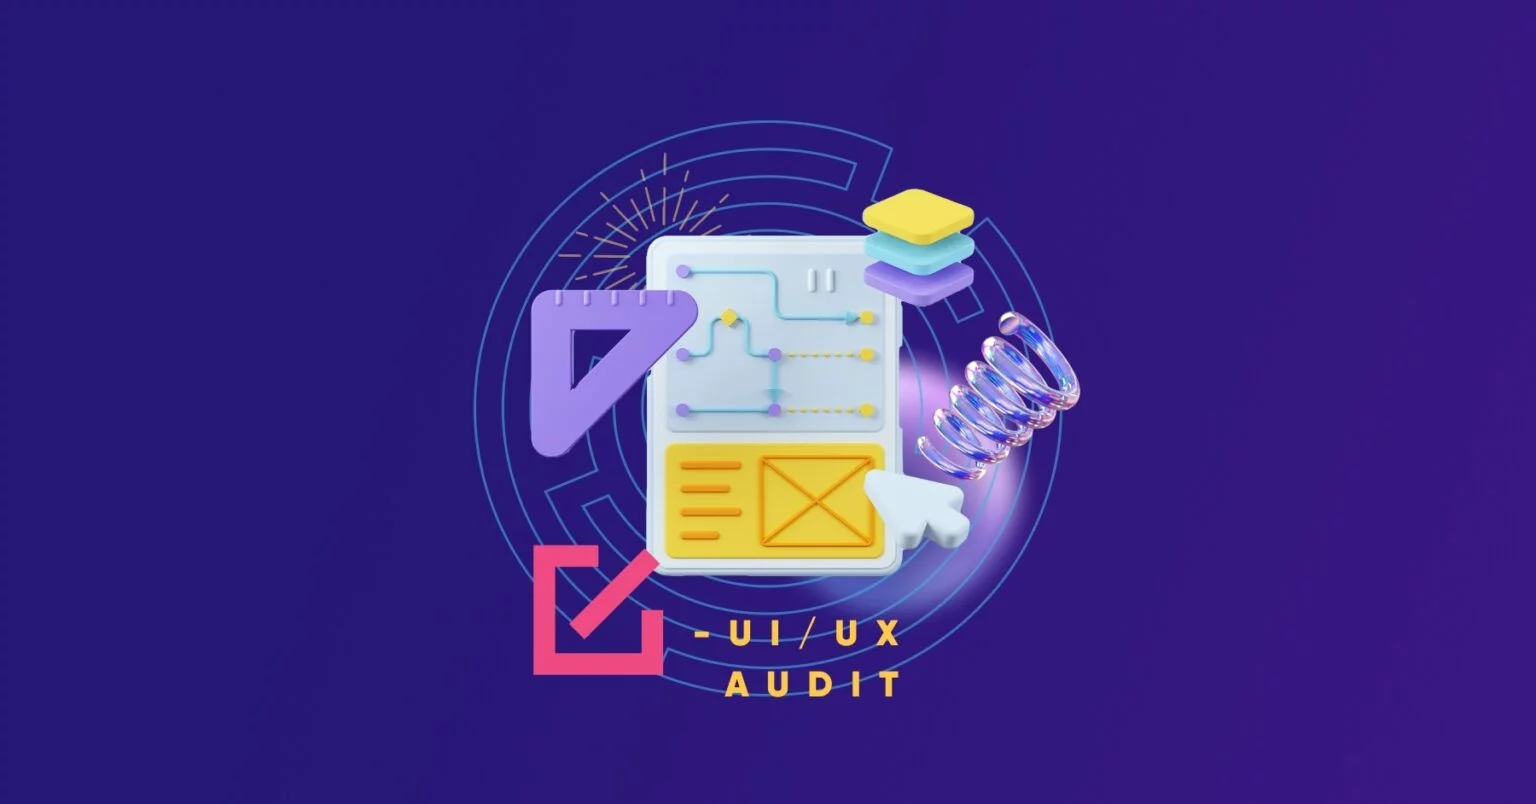 UI/UX Audit